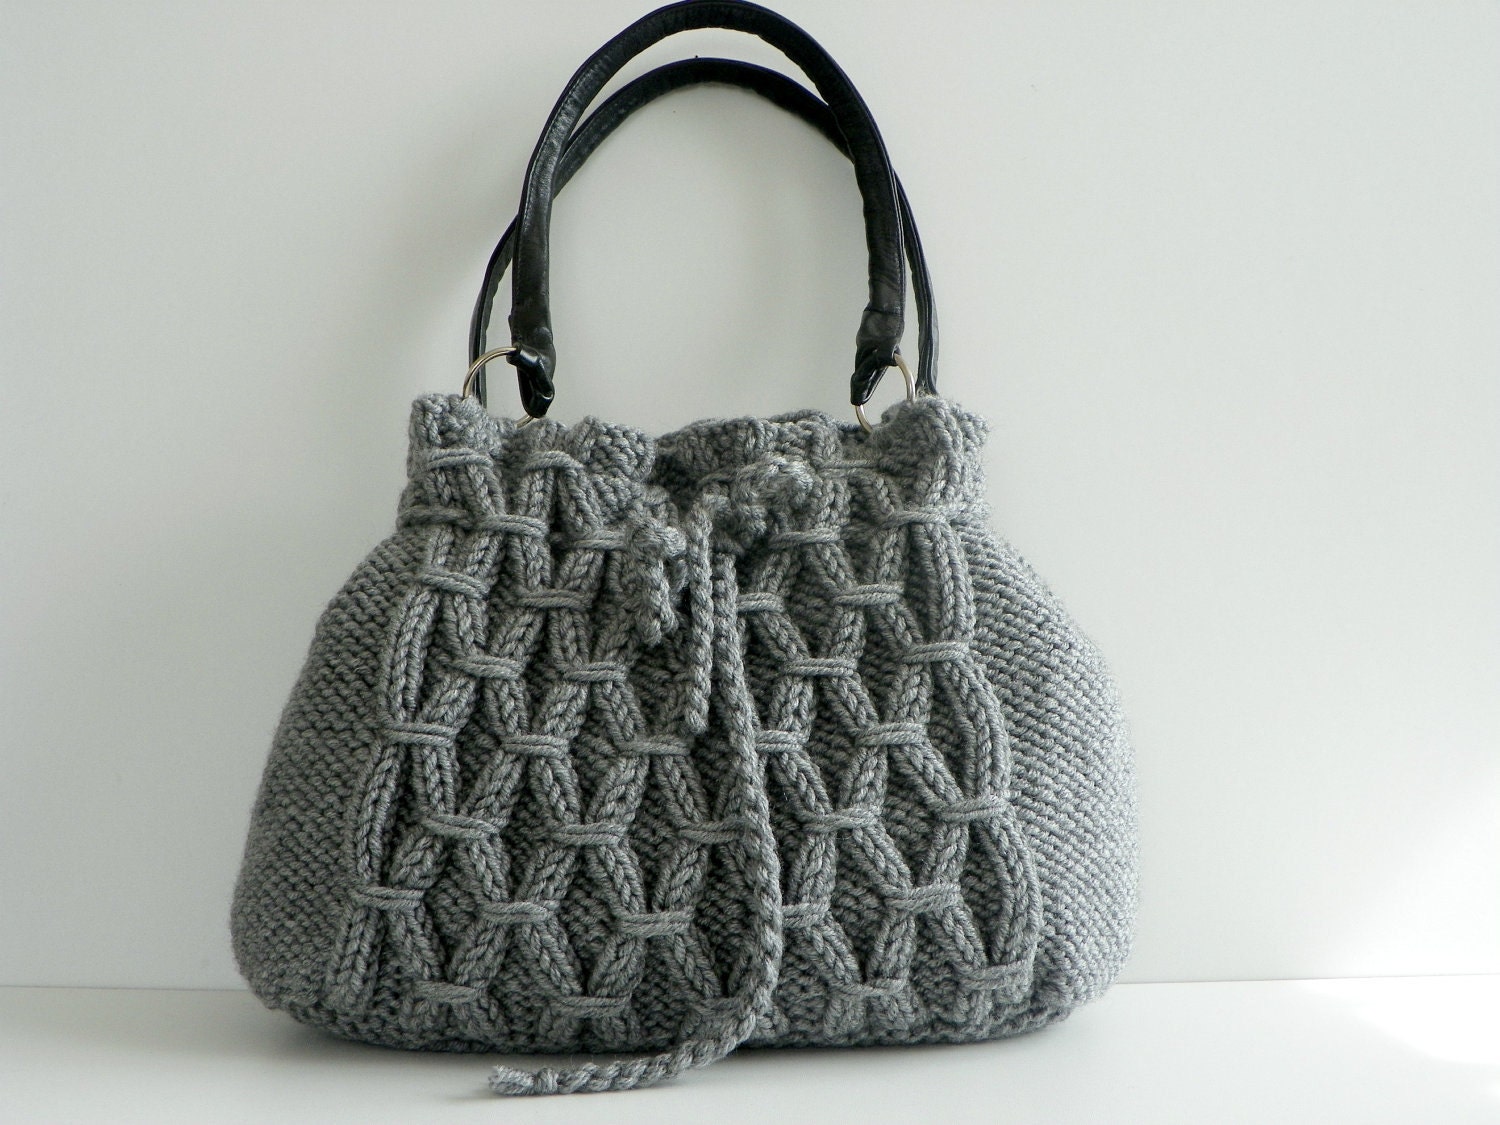 SALE OFF 15% NzLbags New Gray Knit Bag Handbag Shoulder